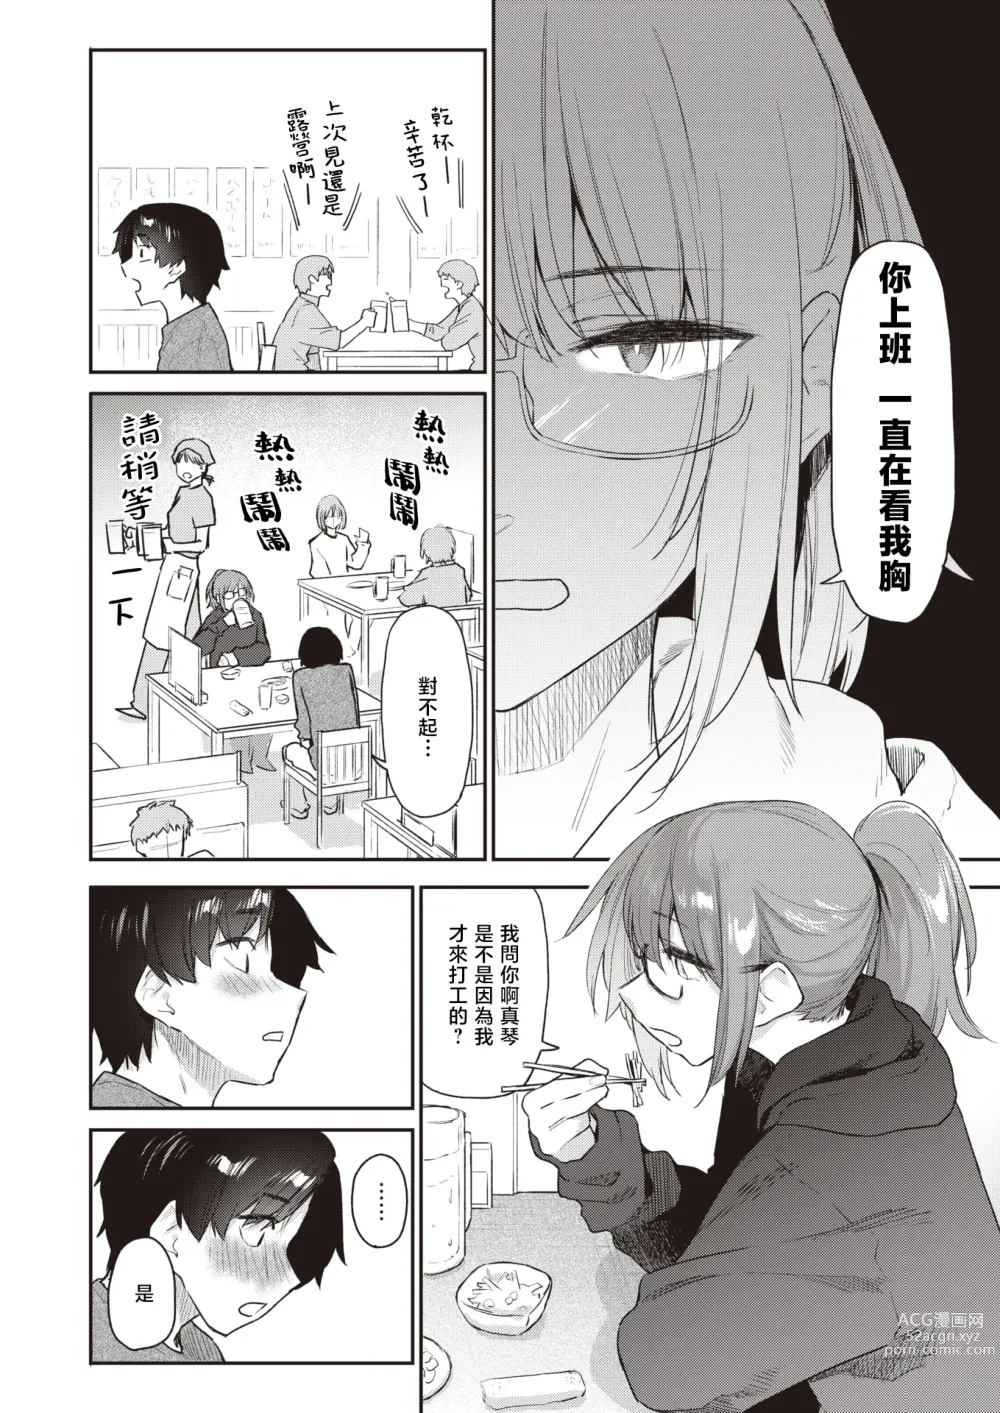 Page 7 of manga 绕道